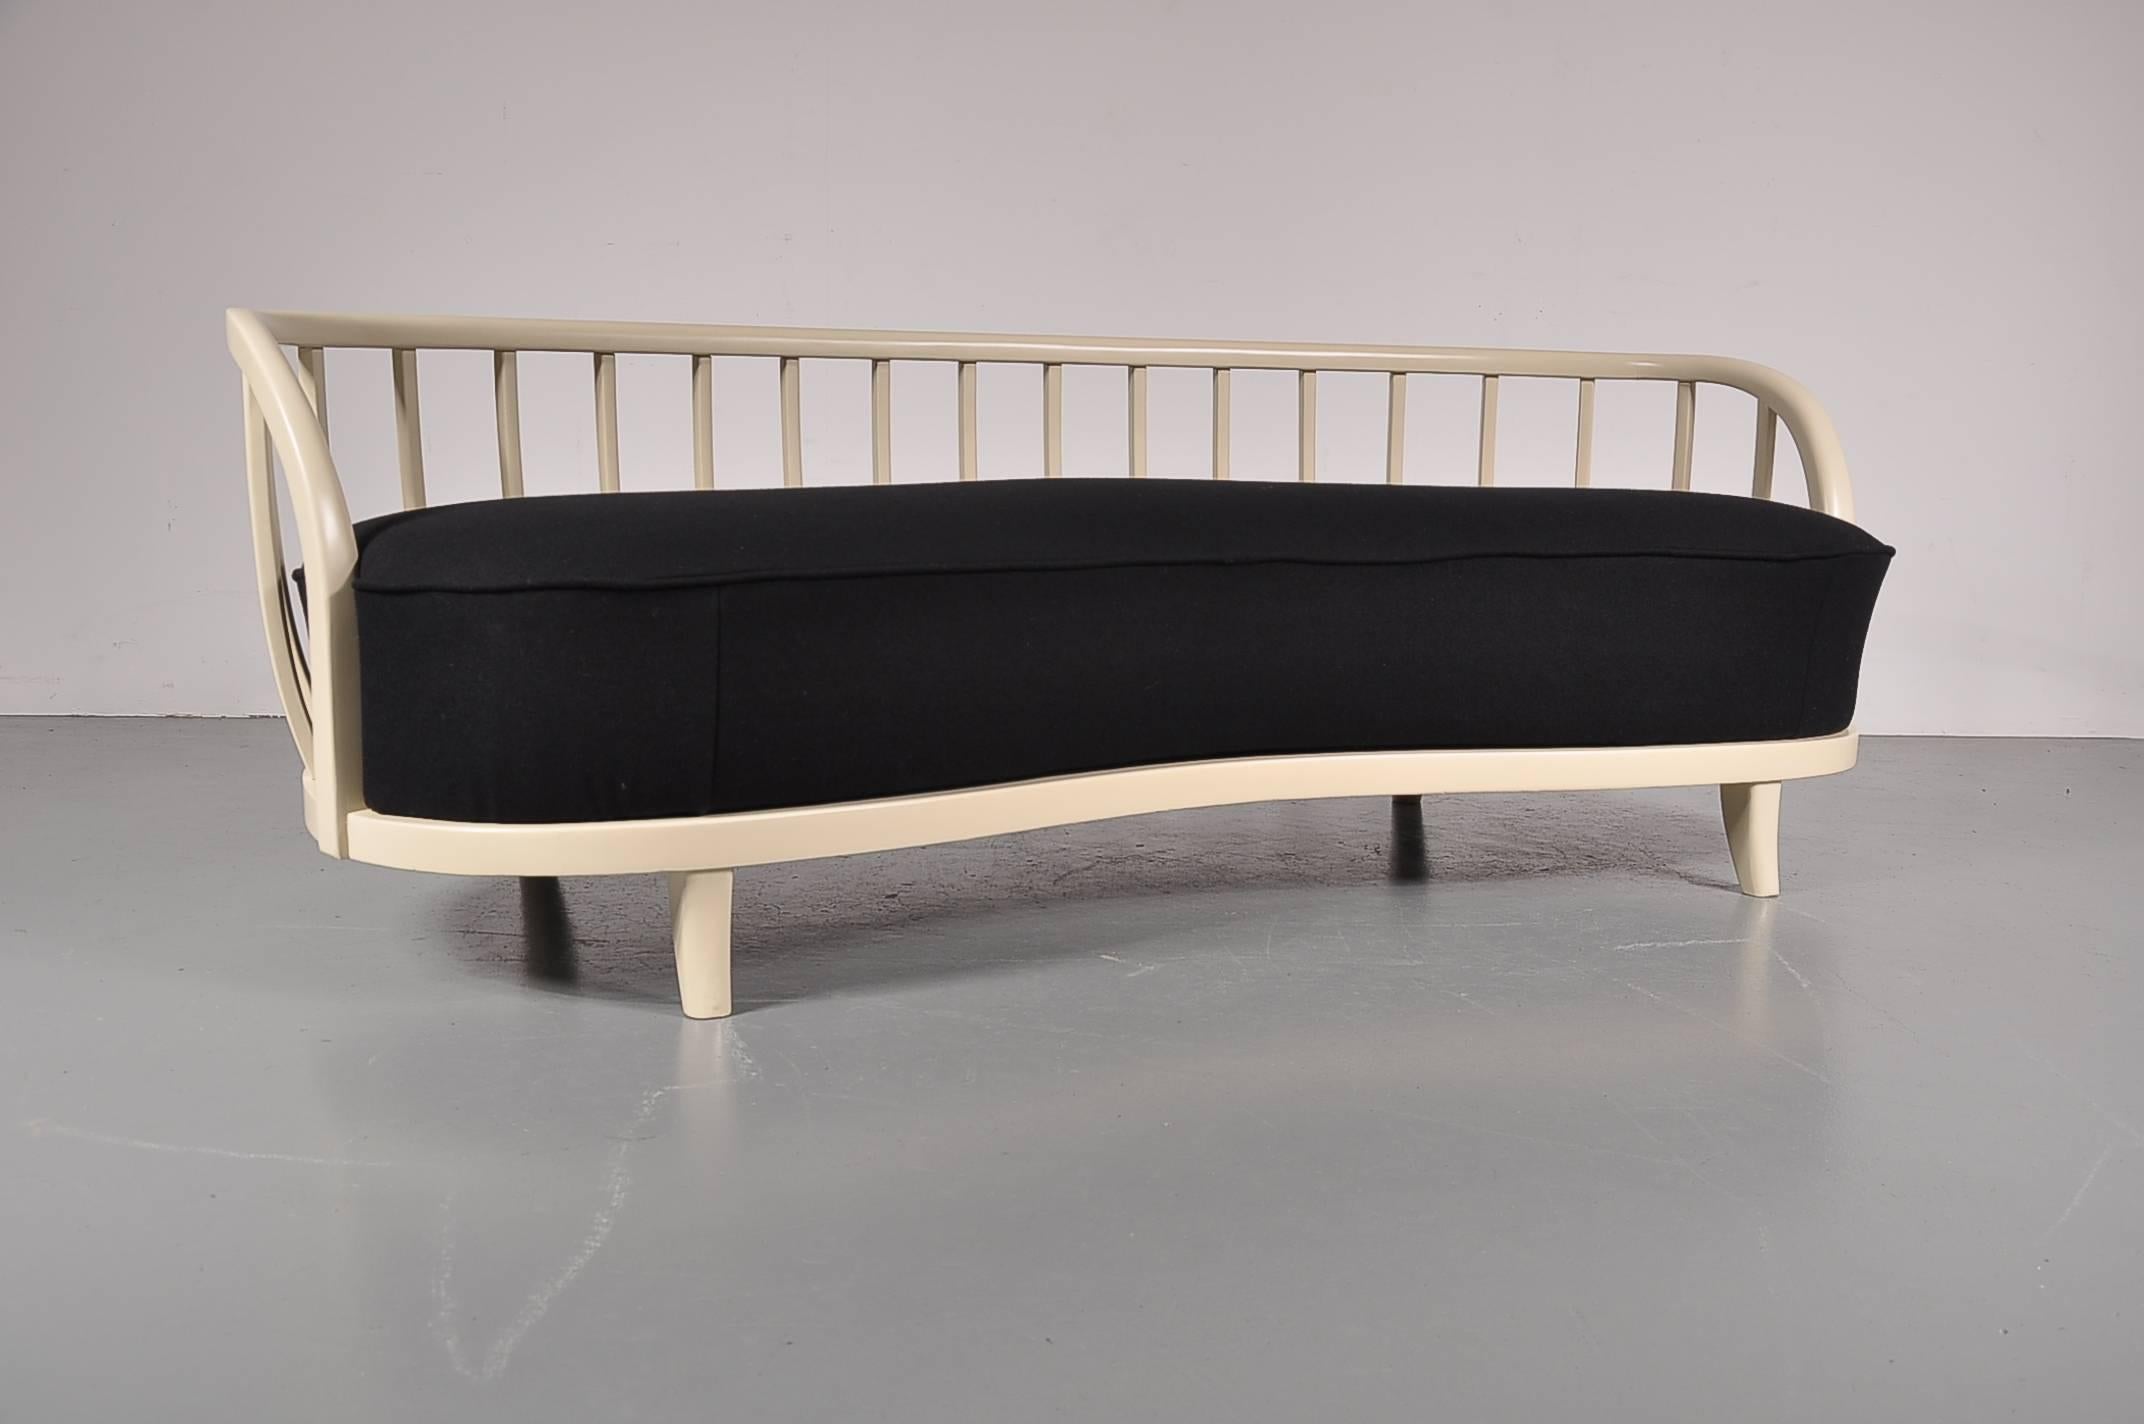 Ein schönes Sofa, hergestellt in Skandinavien in den 1940er Jahren.

Die elegante Form der Rückenlehne ist das Besondere an diesem Sofa. Aus hochwertig lackiertem Holz gefertigt und mit Speichen in der Rückenlehne versehen, vermittelt das